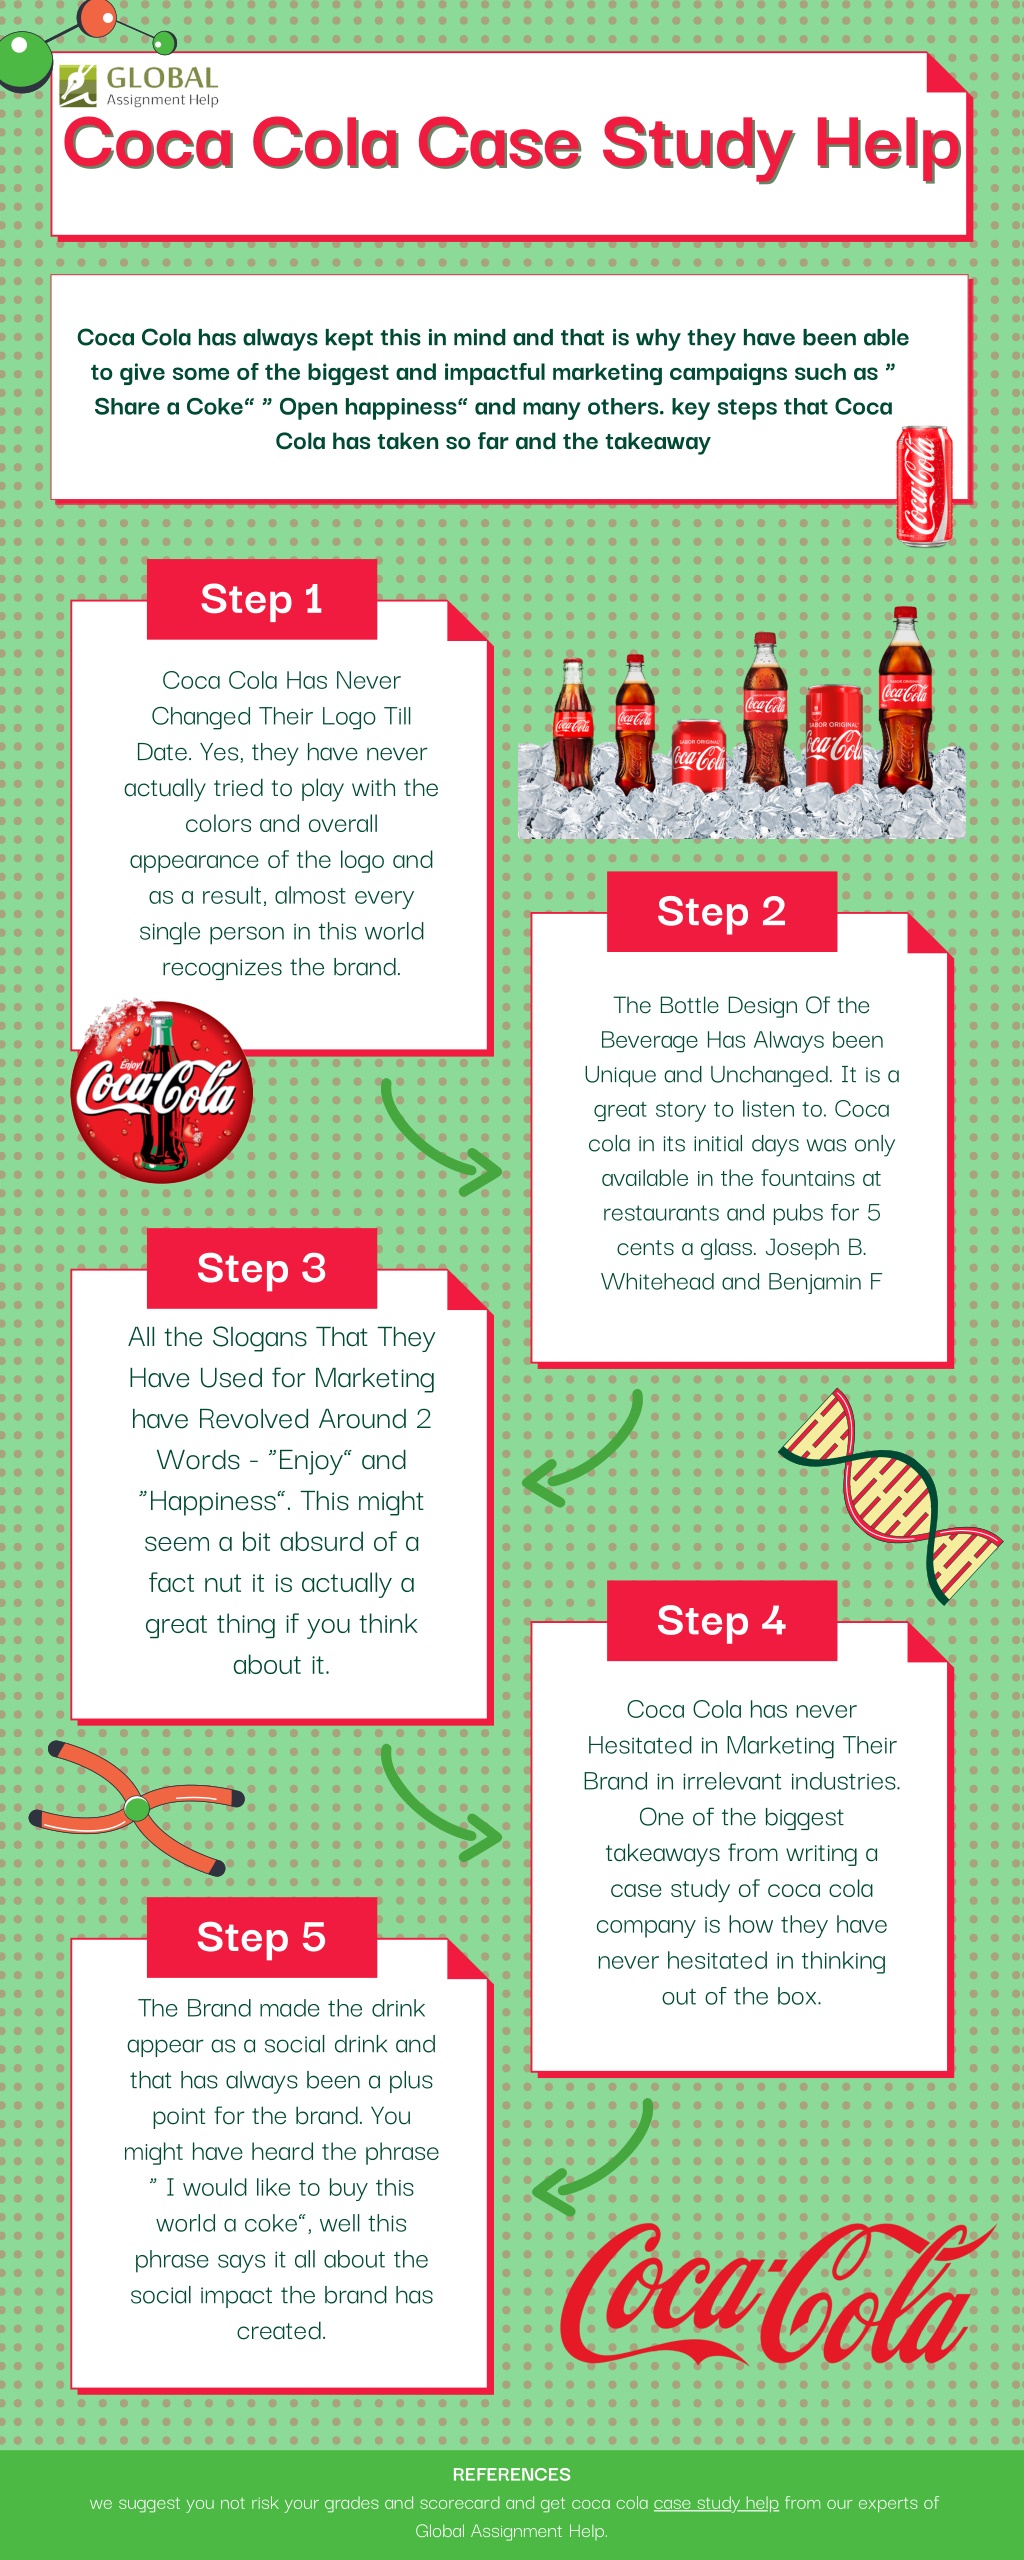 coca cola case study summary